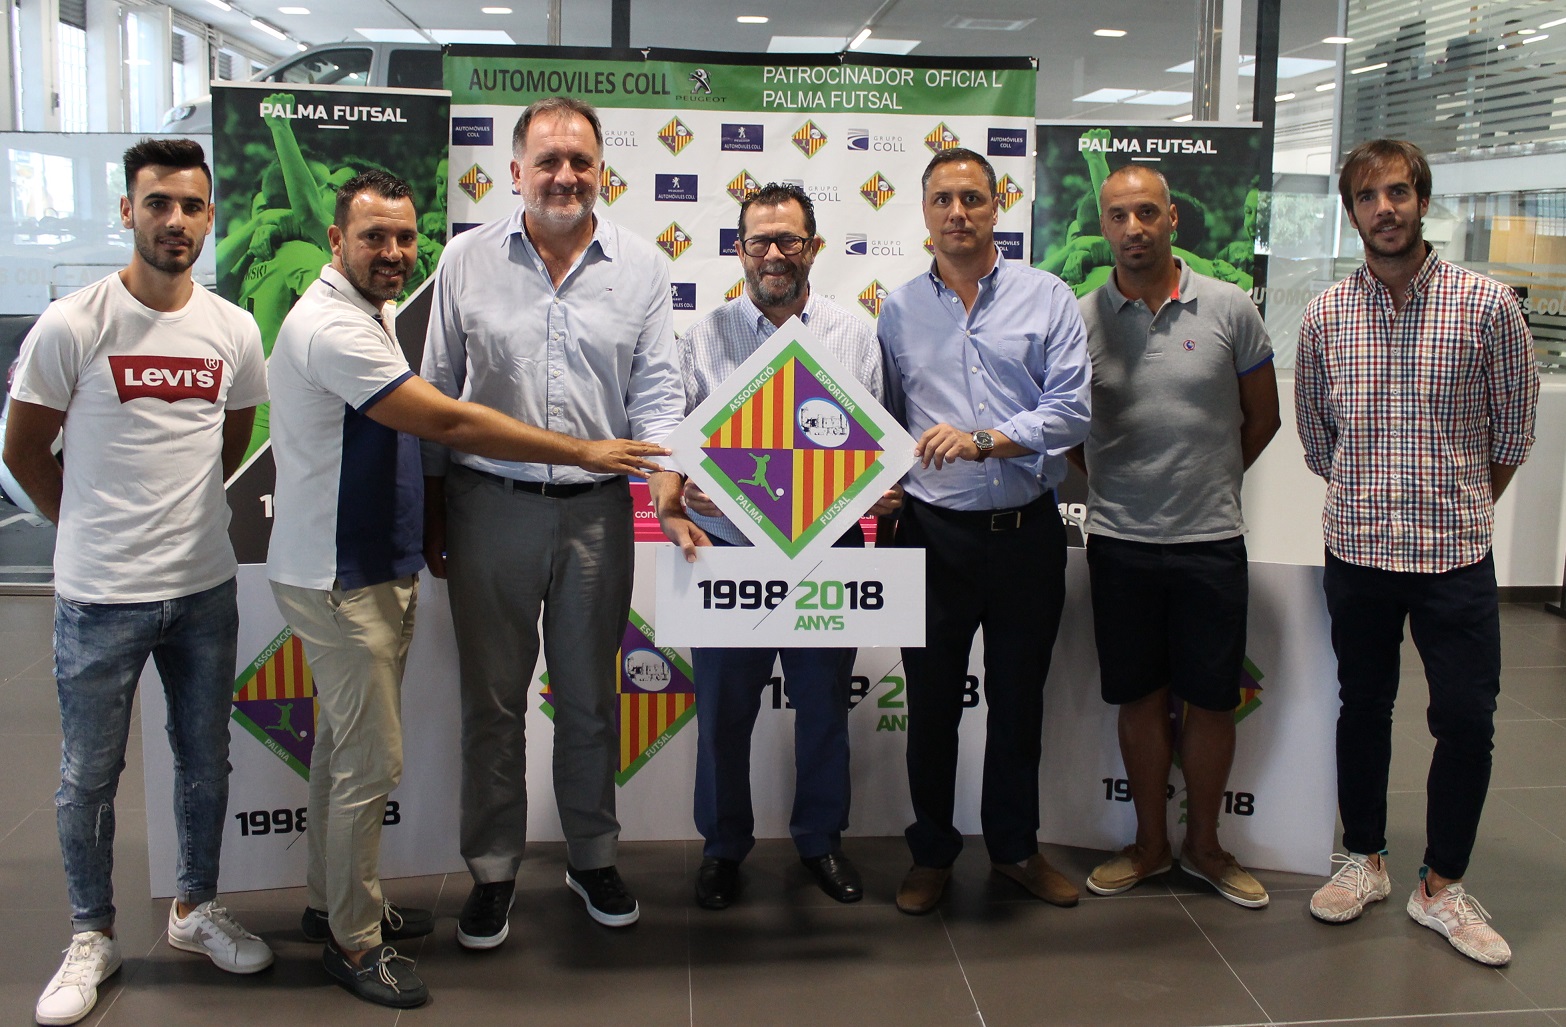 web El Palma Futsal presentó los actos del 20 aniversario en las instalaciones de Automóviles Coll (1)